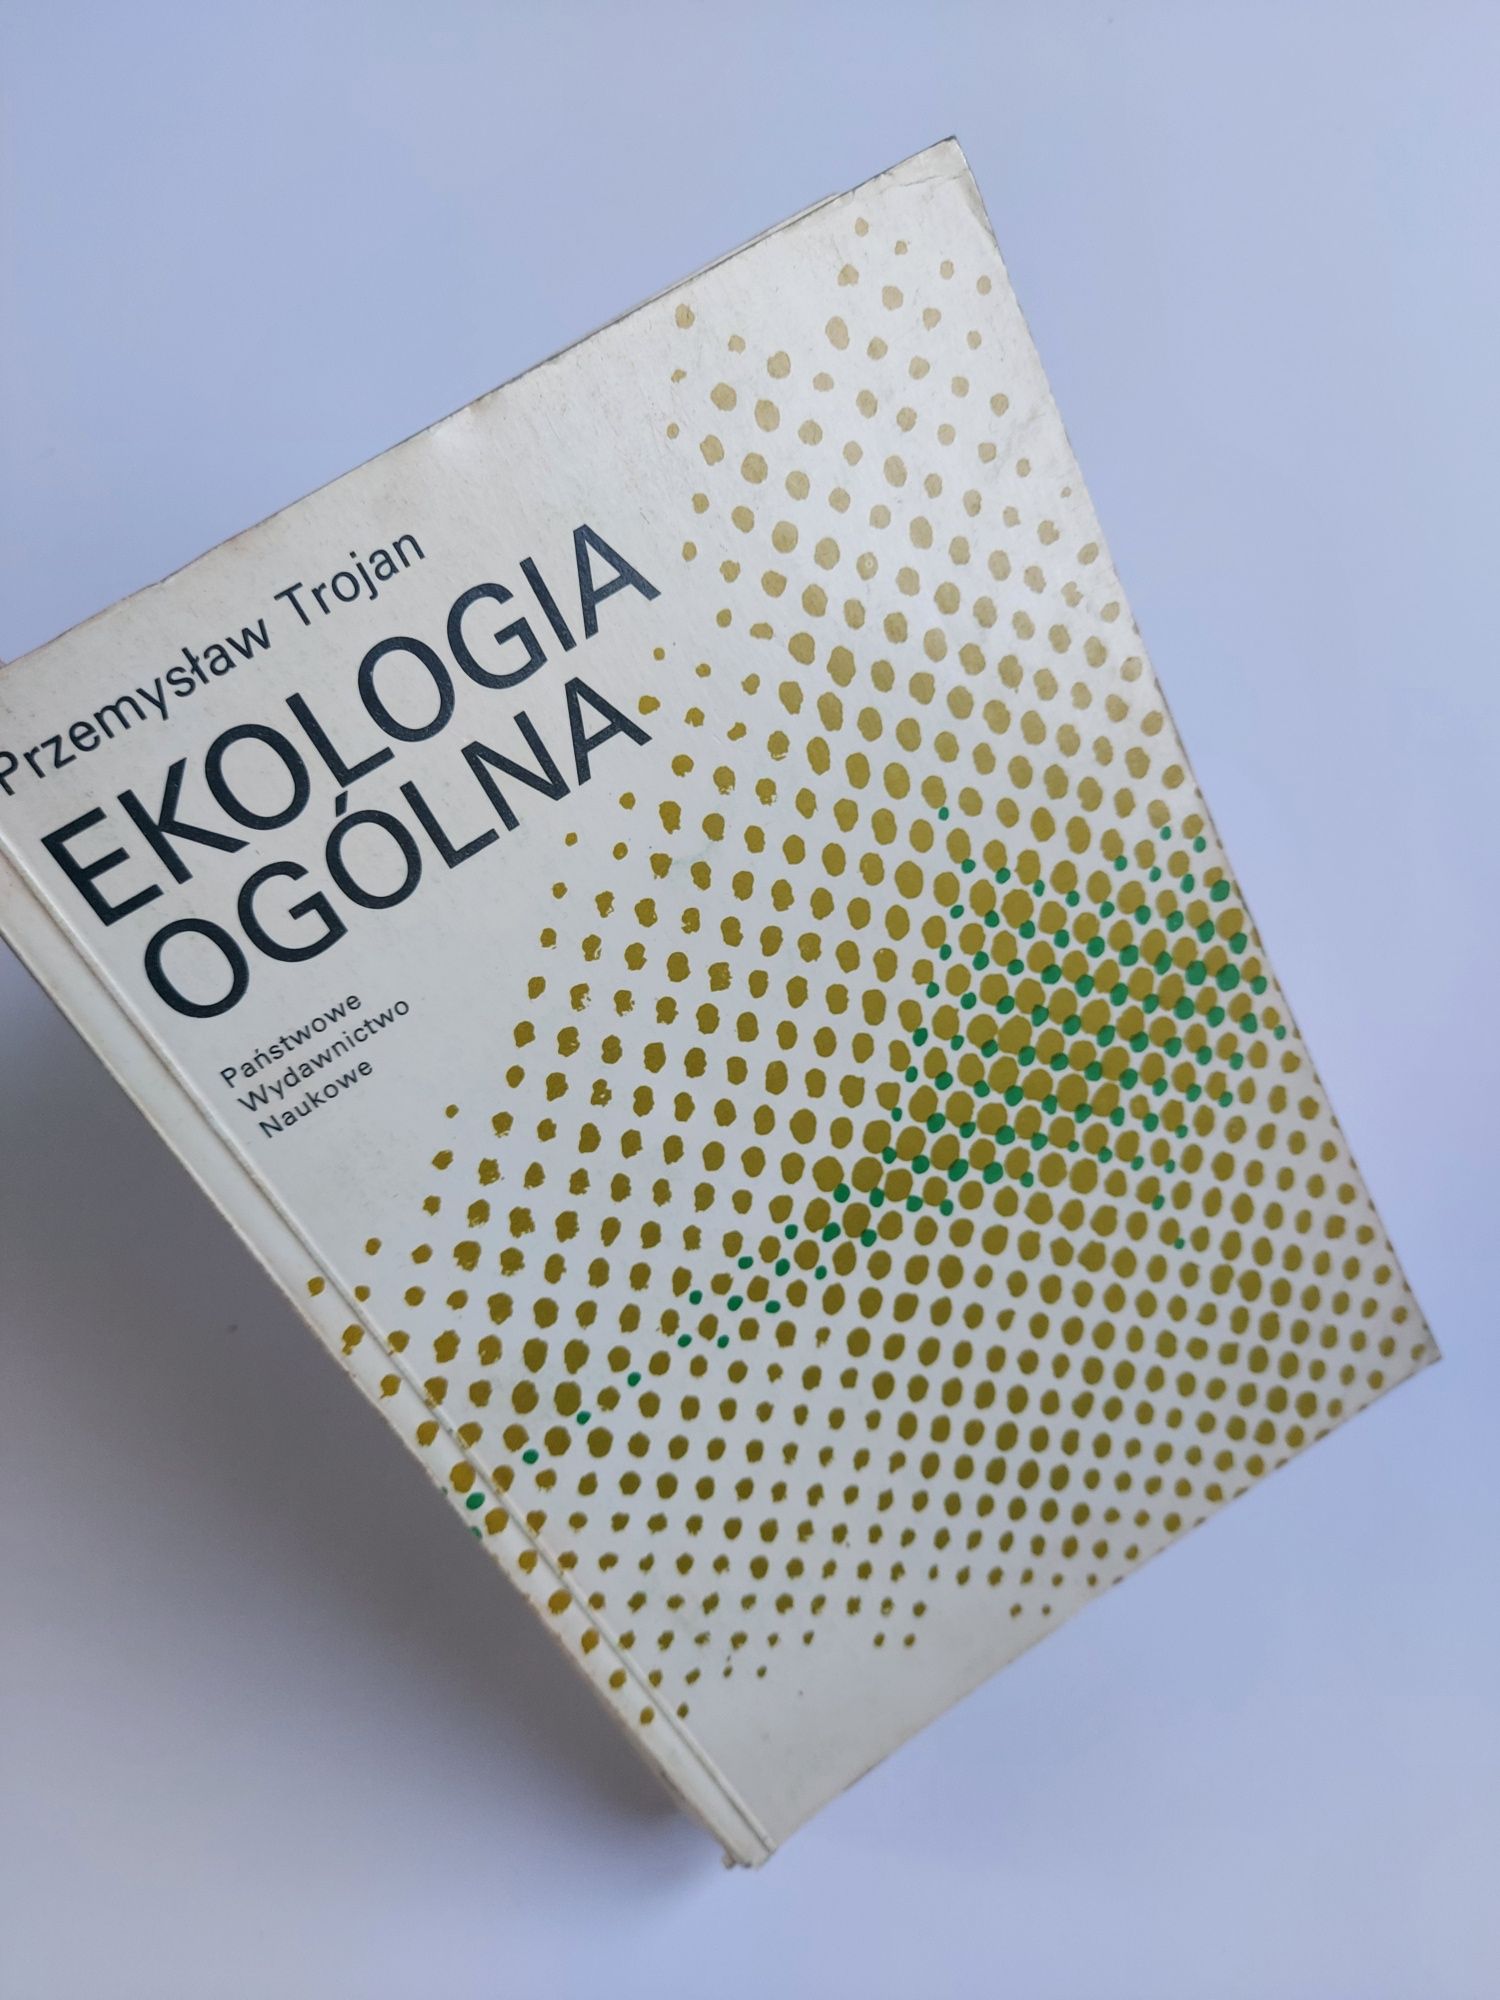 Ekologia ogólna - Przemysław Trojan